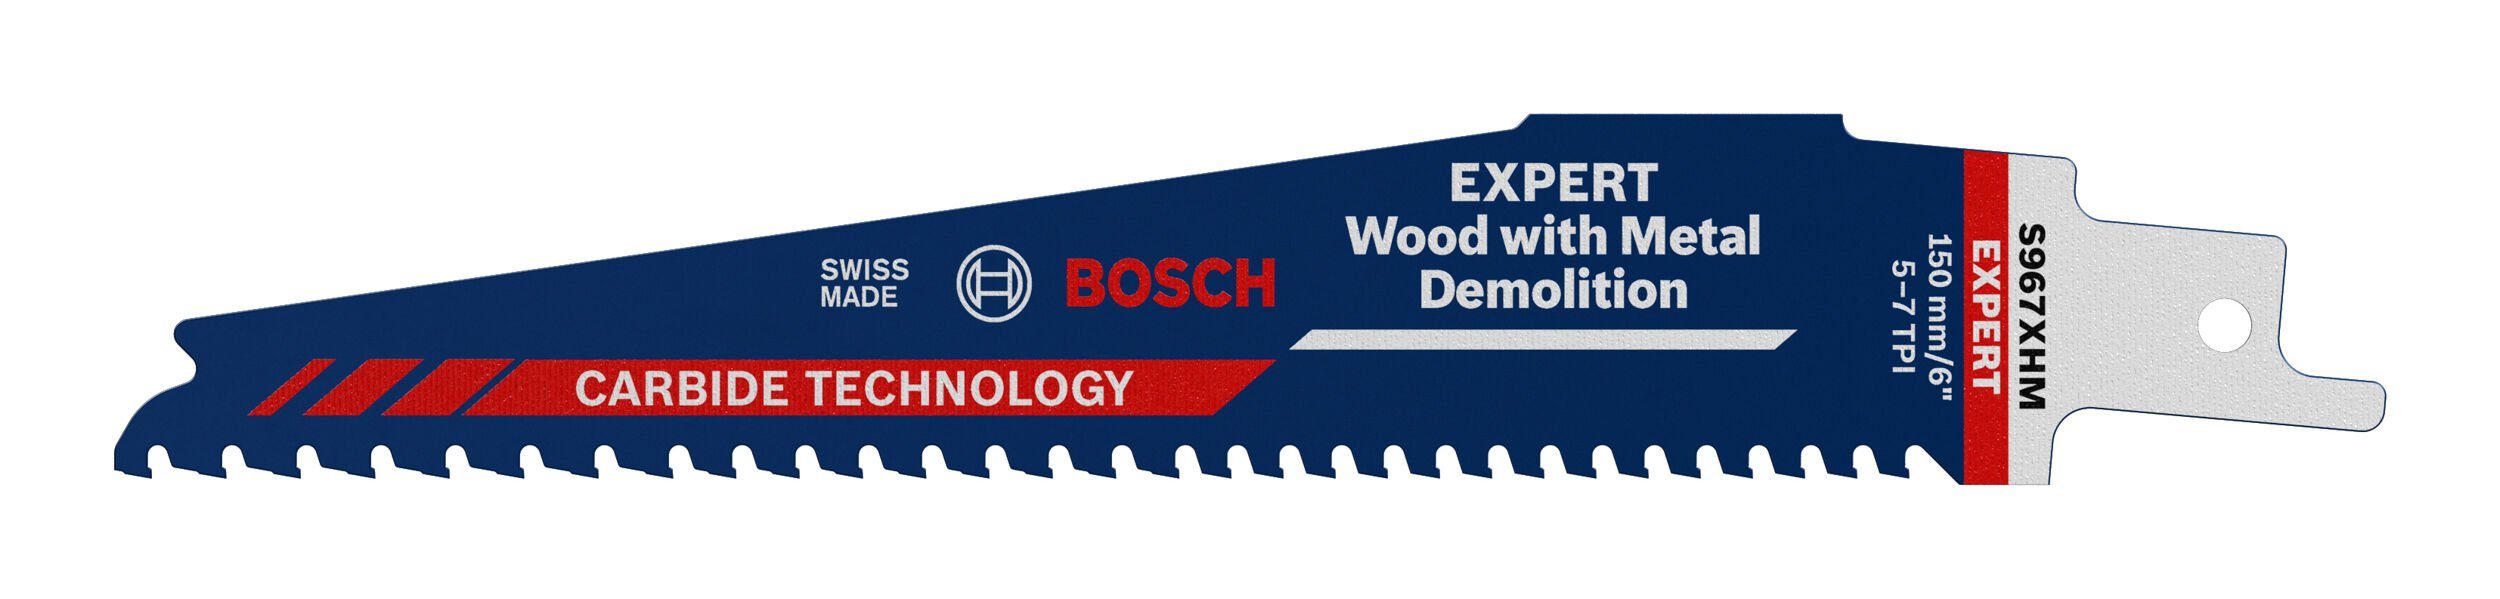 BOSCH Säbelsägeblatt Expert Wood with Metal Demolition, Expert S 967 XHM Endurance for Wood and Metal Demolition